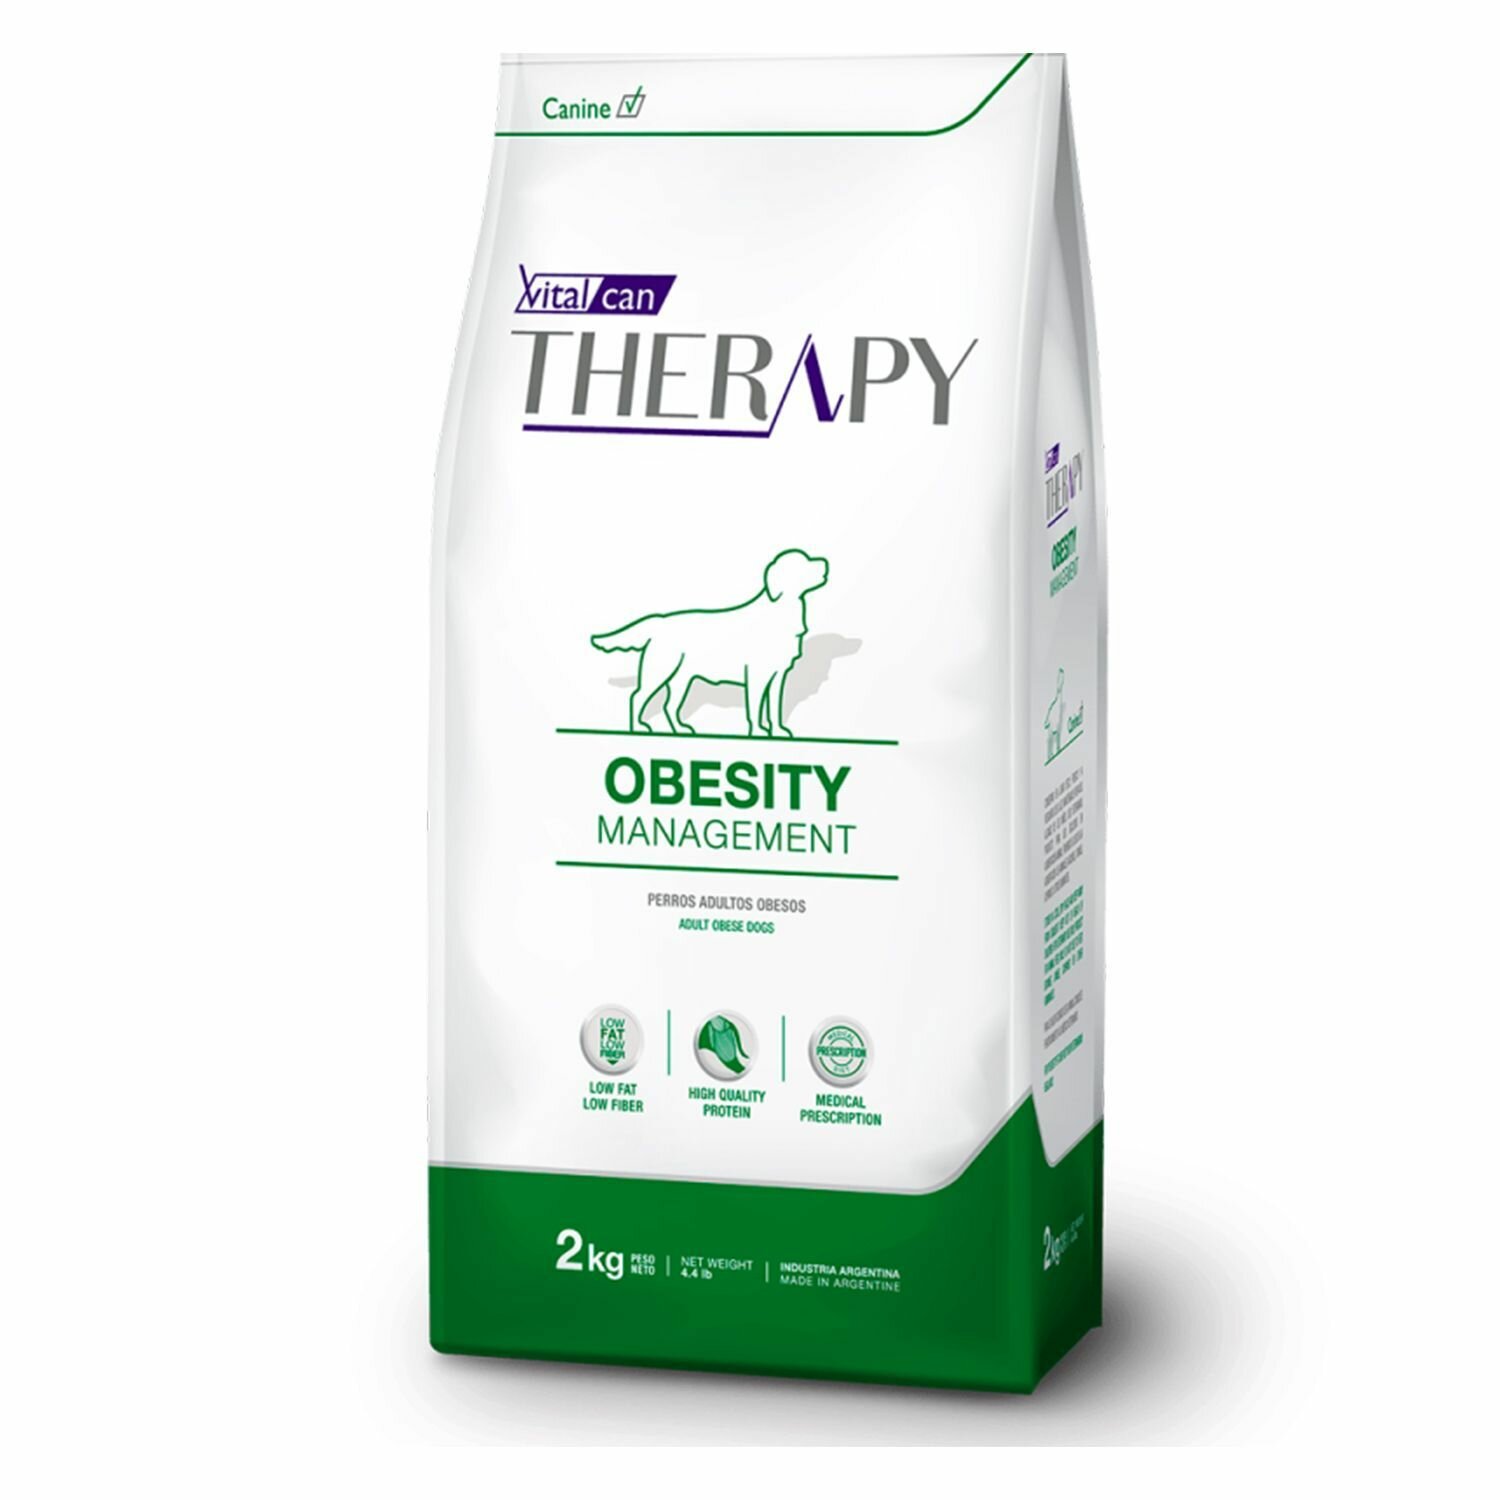 Сухой корм для собак Vitalcan Therapy Canine Obesity Management, для снижения веса, лечебный, 2 кг